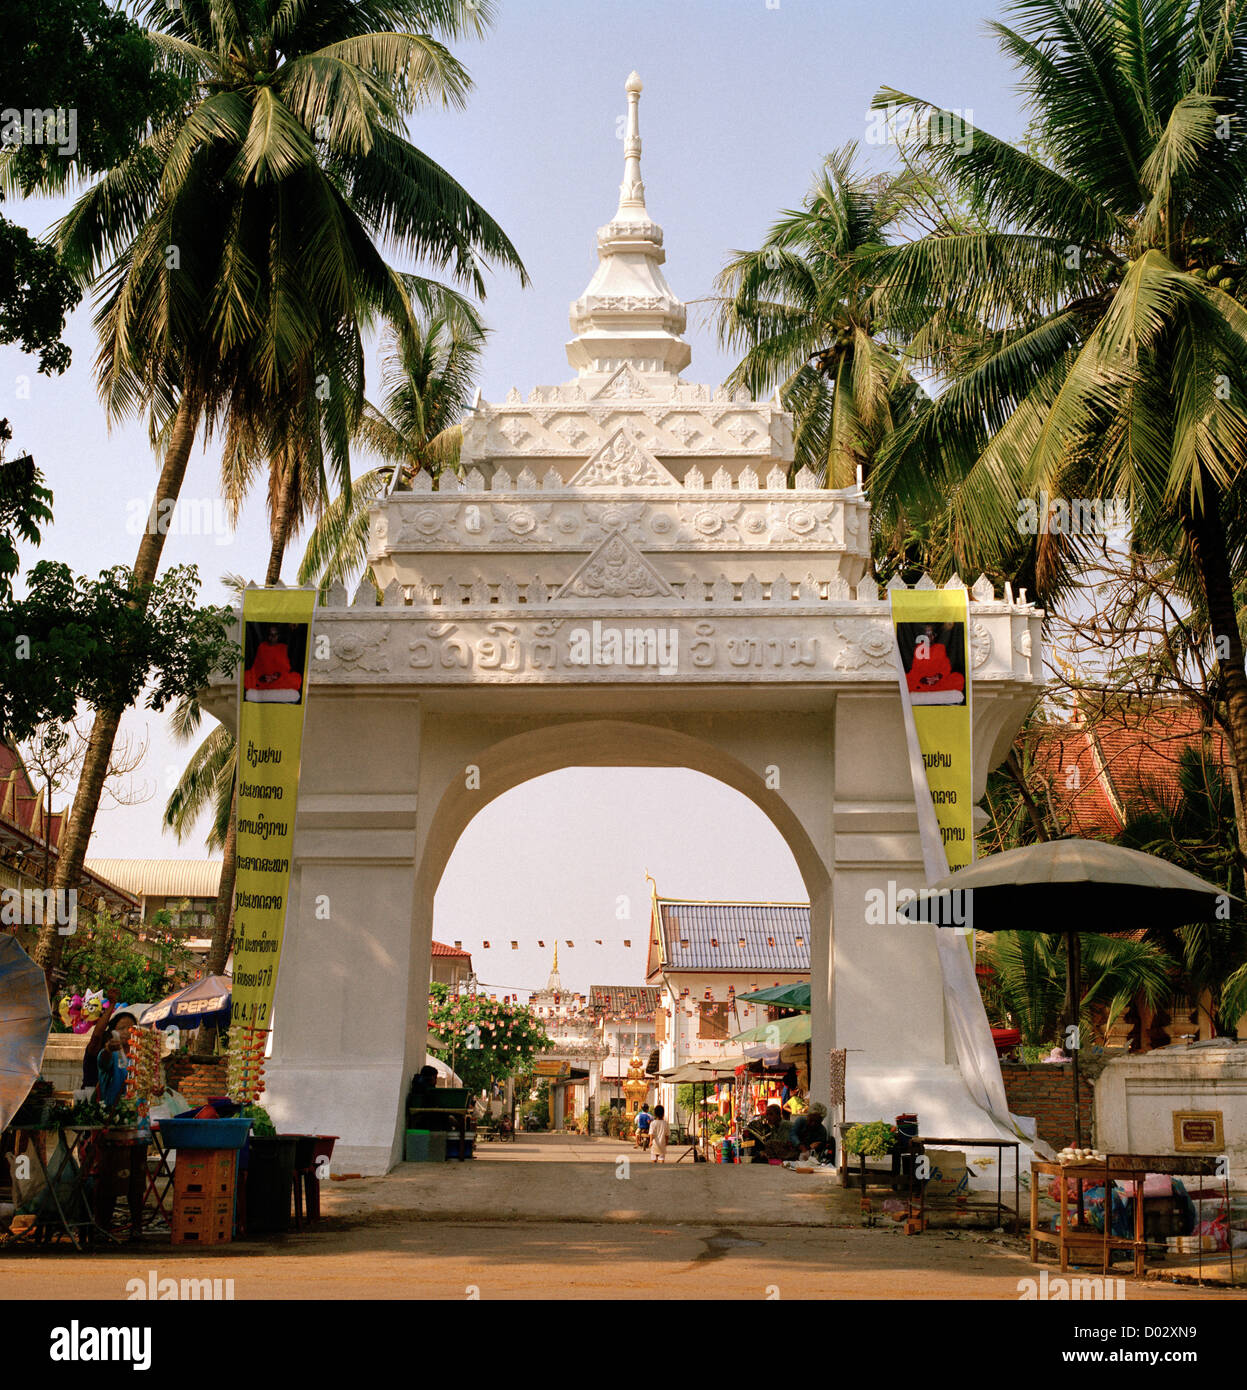 Architecture bâtiment traditionnel archway à Vientiane au Laos dans l'Indochine en Extrême-Orient Asie du sud-est. Arch Arches billet Banque D'Images